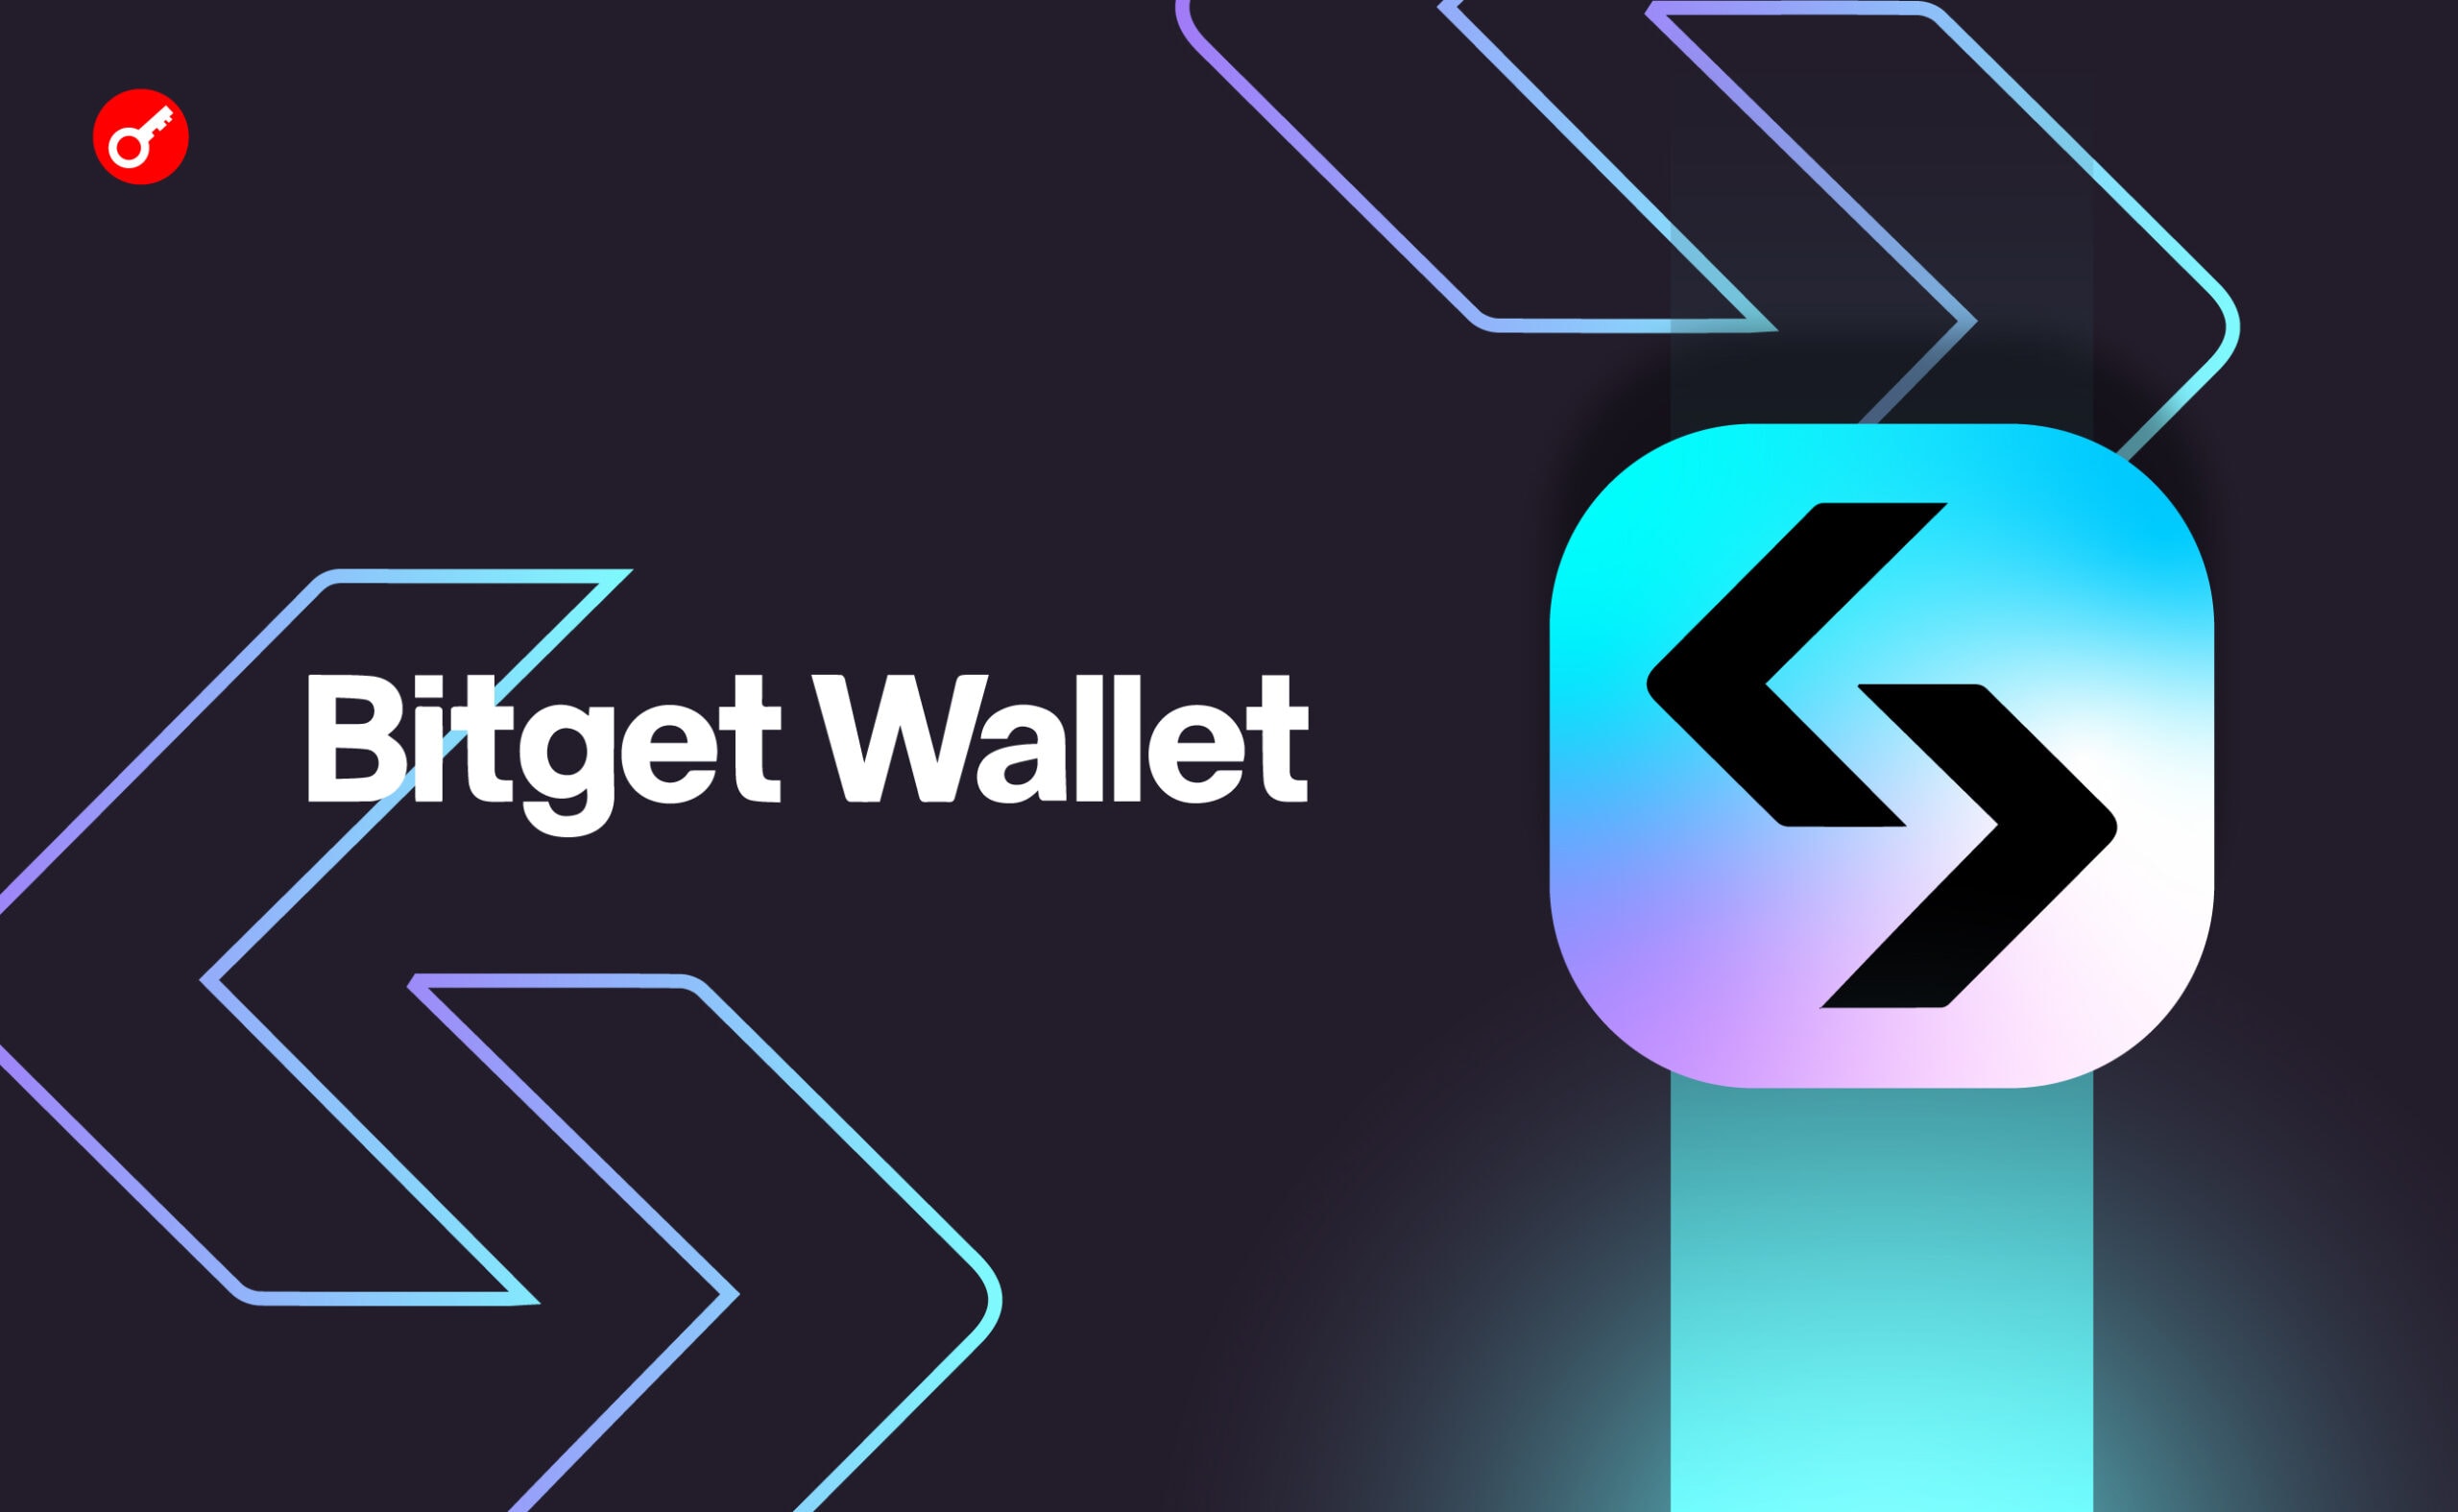 Bitget Wallet ogłosił uruchomienie tokena ekosystemu BWB i airdrop. Główny kolaż wiadomości.